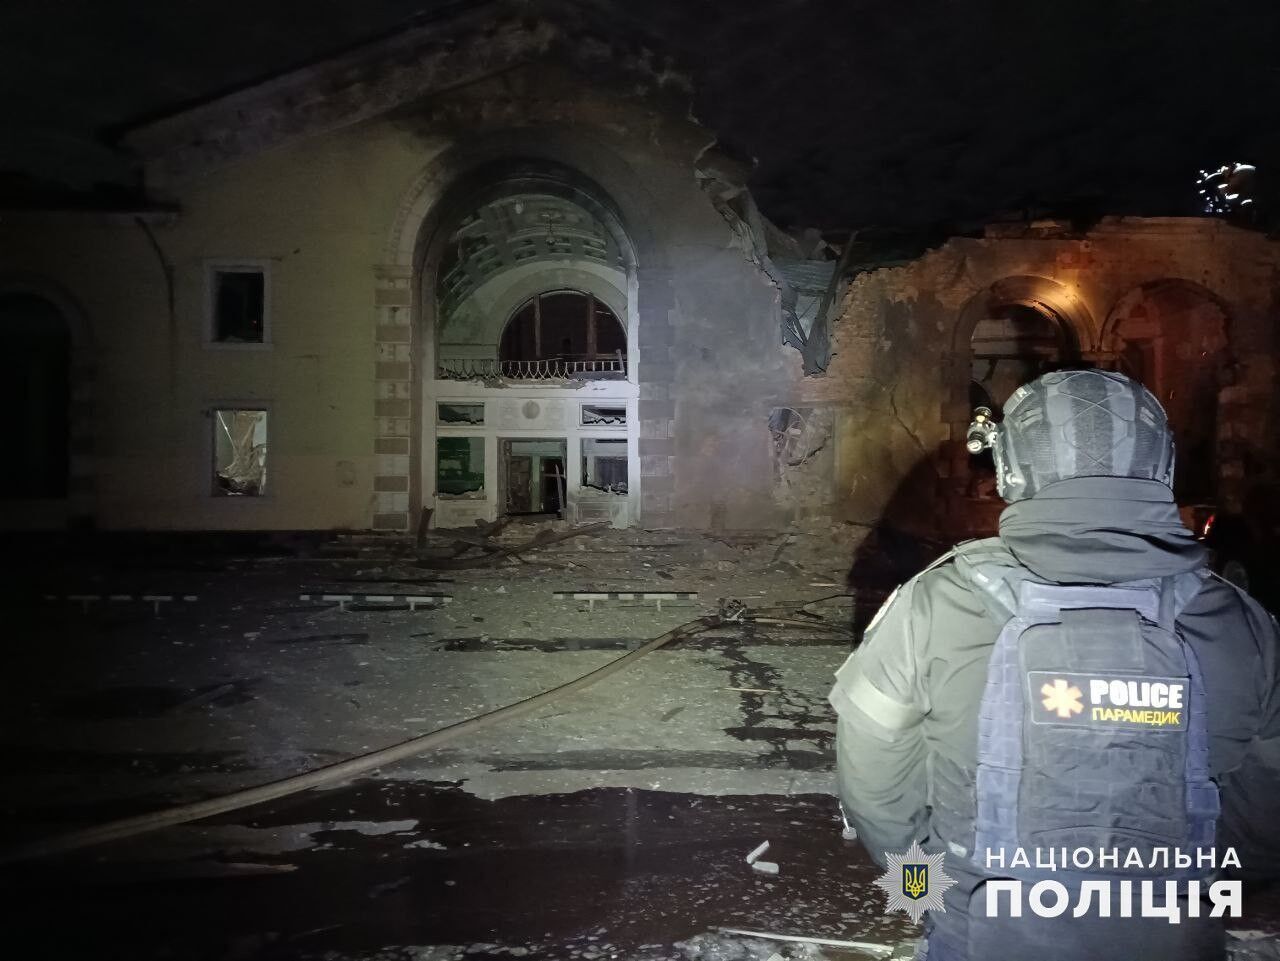 Массированный удар по Константиновке: сооружен вокзал и гражданские объекты (фото)